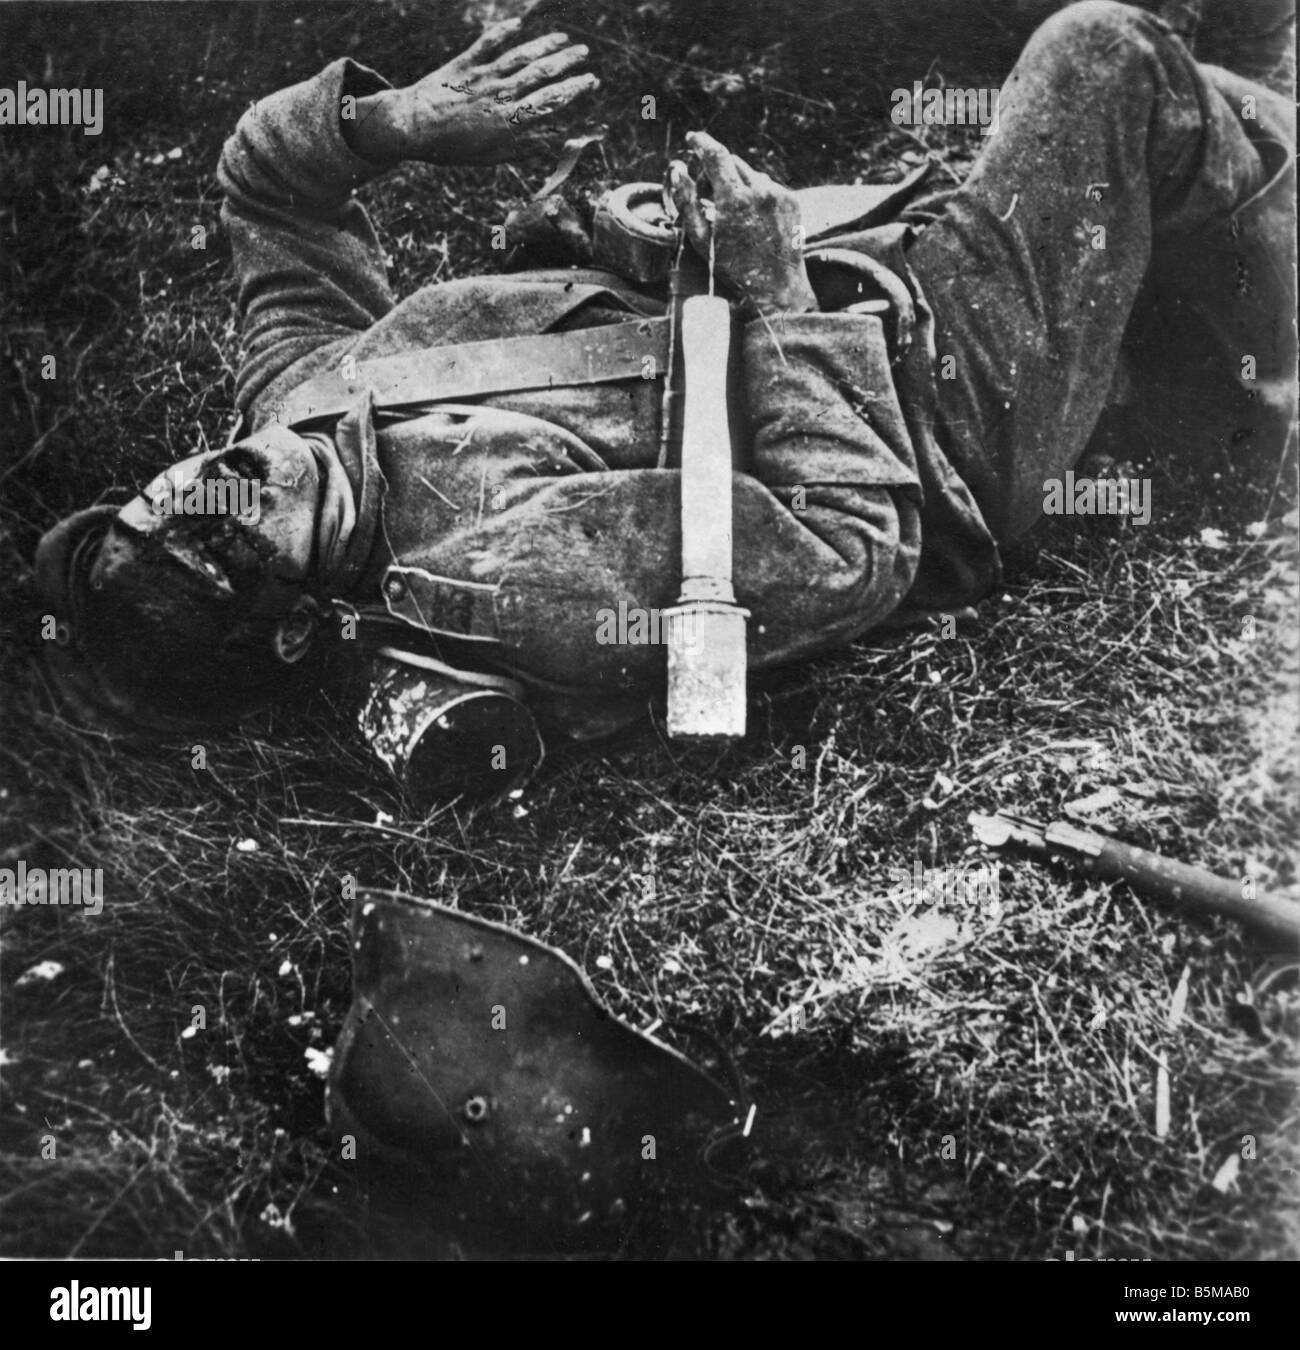 2 G55 W1 1915 7 e soldato tedesco ucciso in azione la prima guerra mondiale la storia della prima guerra mondiale fronte occidentale soldato tedesco ucciso in azione con mano granad Foto Stock